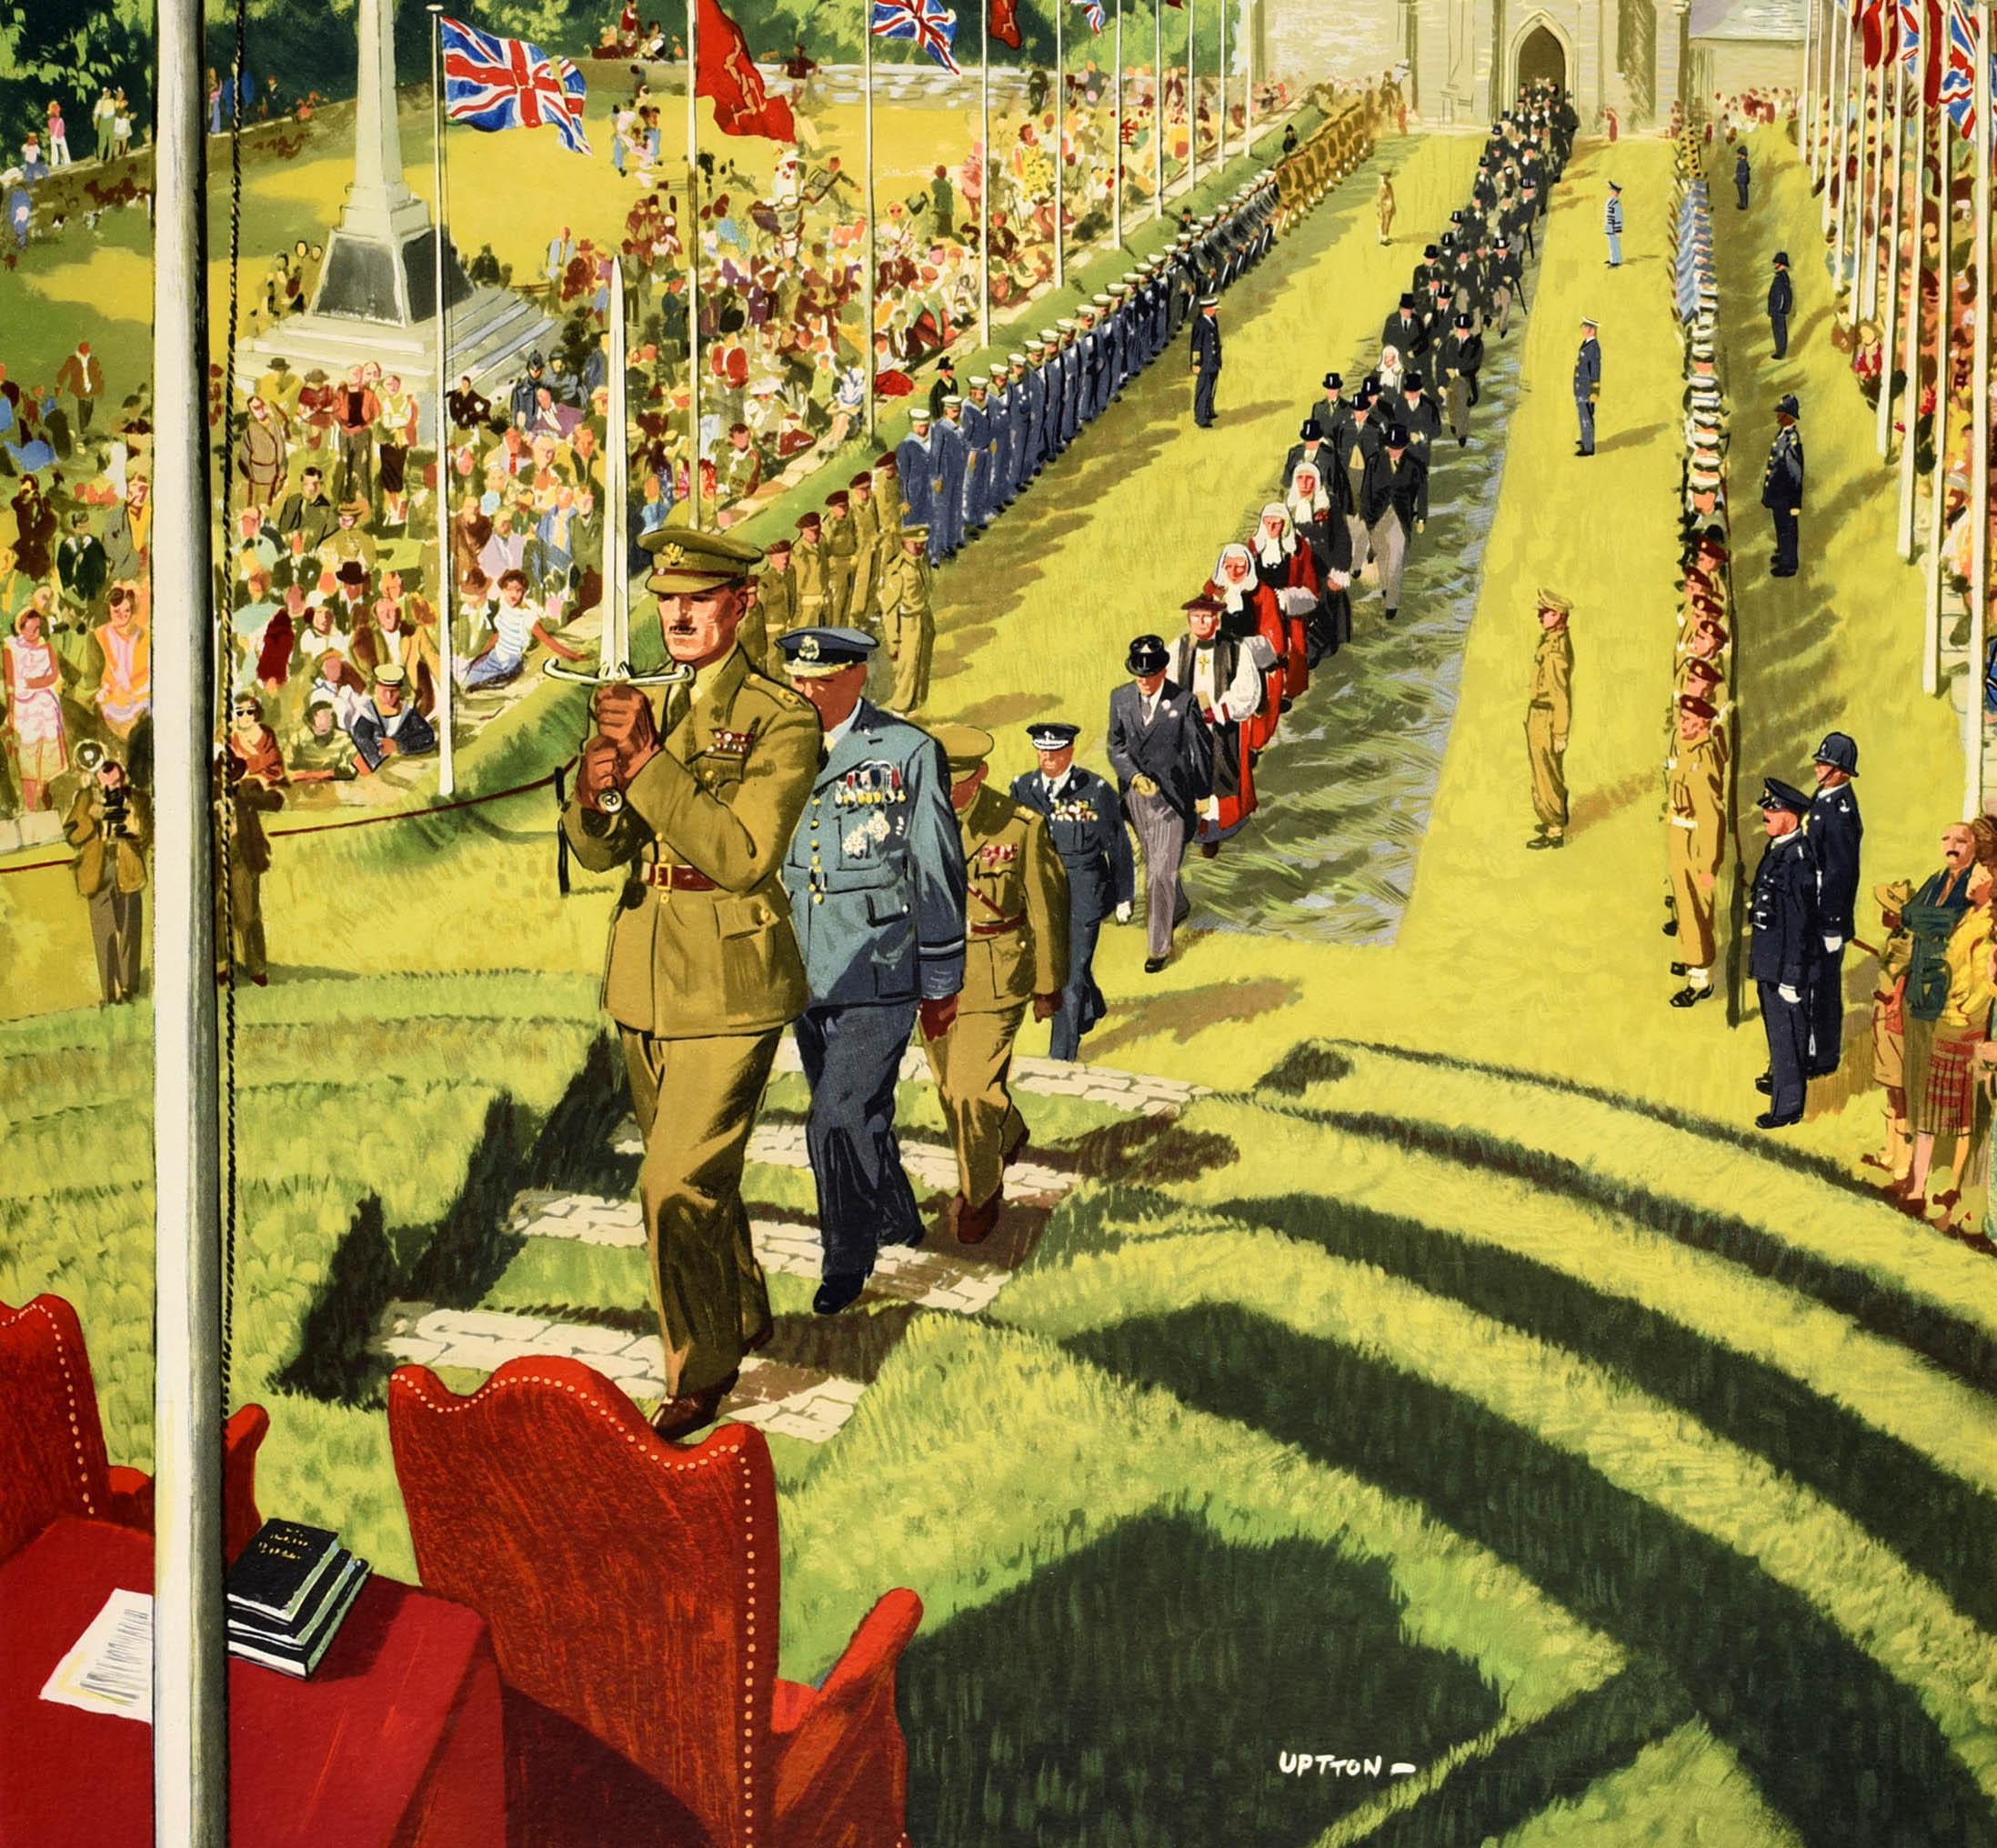 Affiche de voyage originale pour l'île de Man, émise par les chemins de fer britanniques, comportant une image colorée de l'artiste et illustrateur britannique Clive Up&Up (1911-2006) représentant une procession cérémonielle menée par un officier de